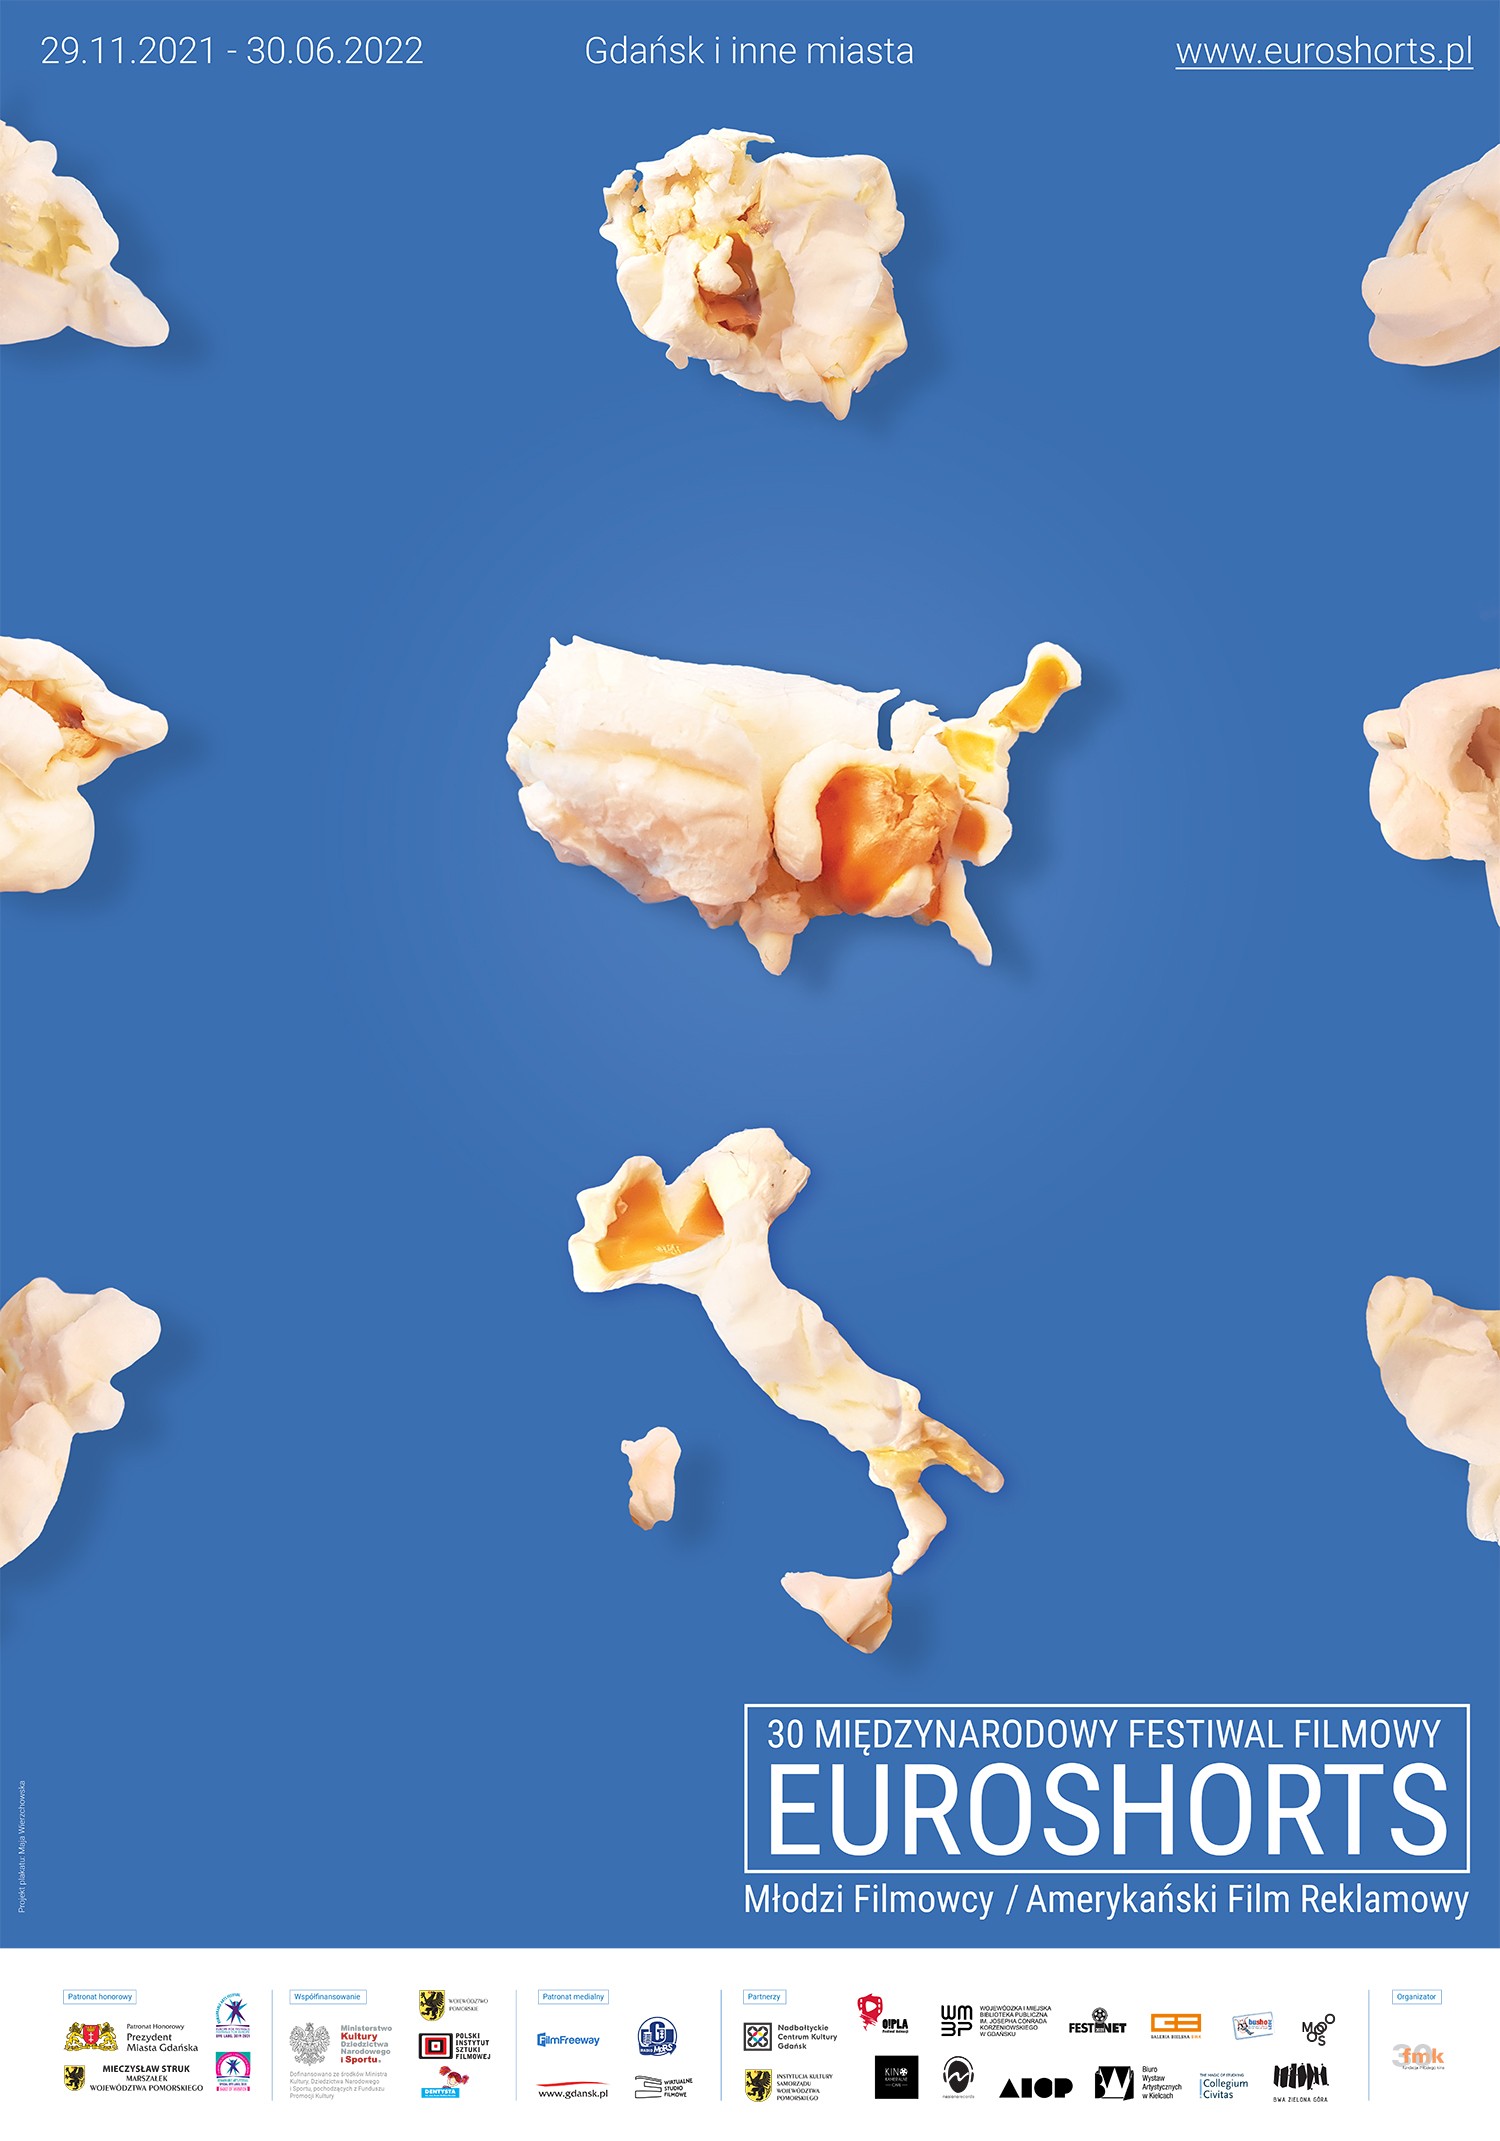 plakat promujący festiwal Euroshorts kraje ulepione z ciasta na niebieskim tle